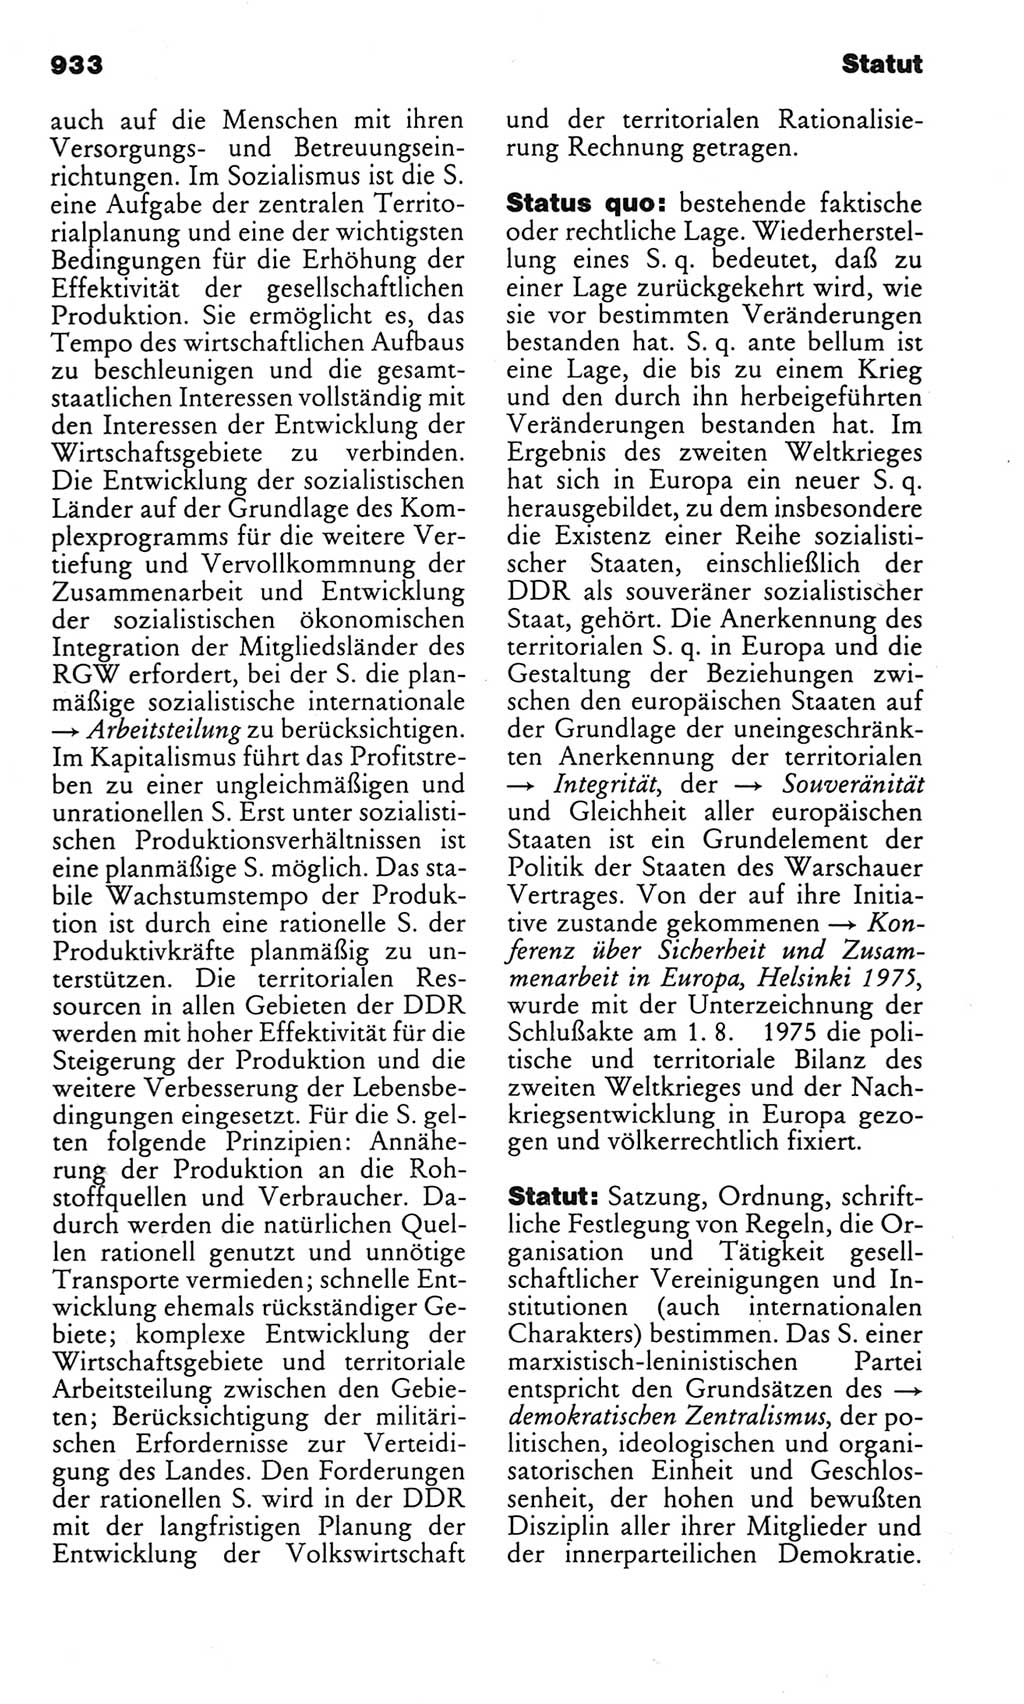 Kleines politisches Wörterbuch [Deutsche Demokratische Republik (DDR)] 1983, Seite 933 (Kl. pol. Wb. DDR 1983, S. 933)